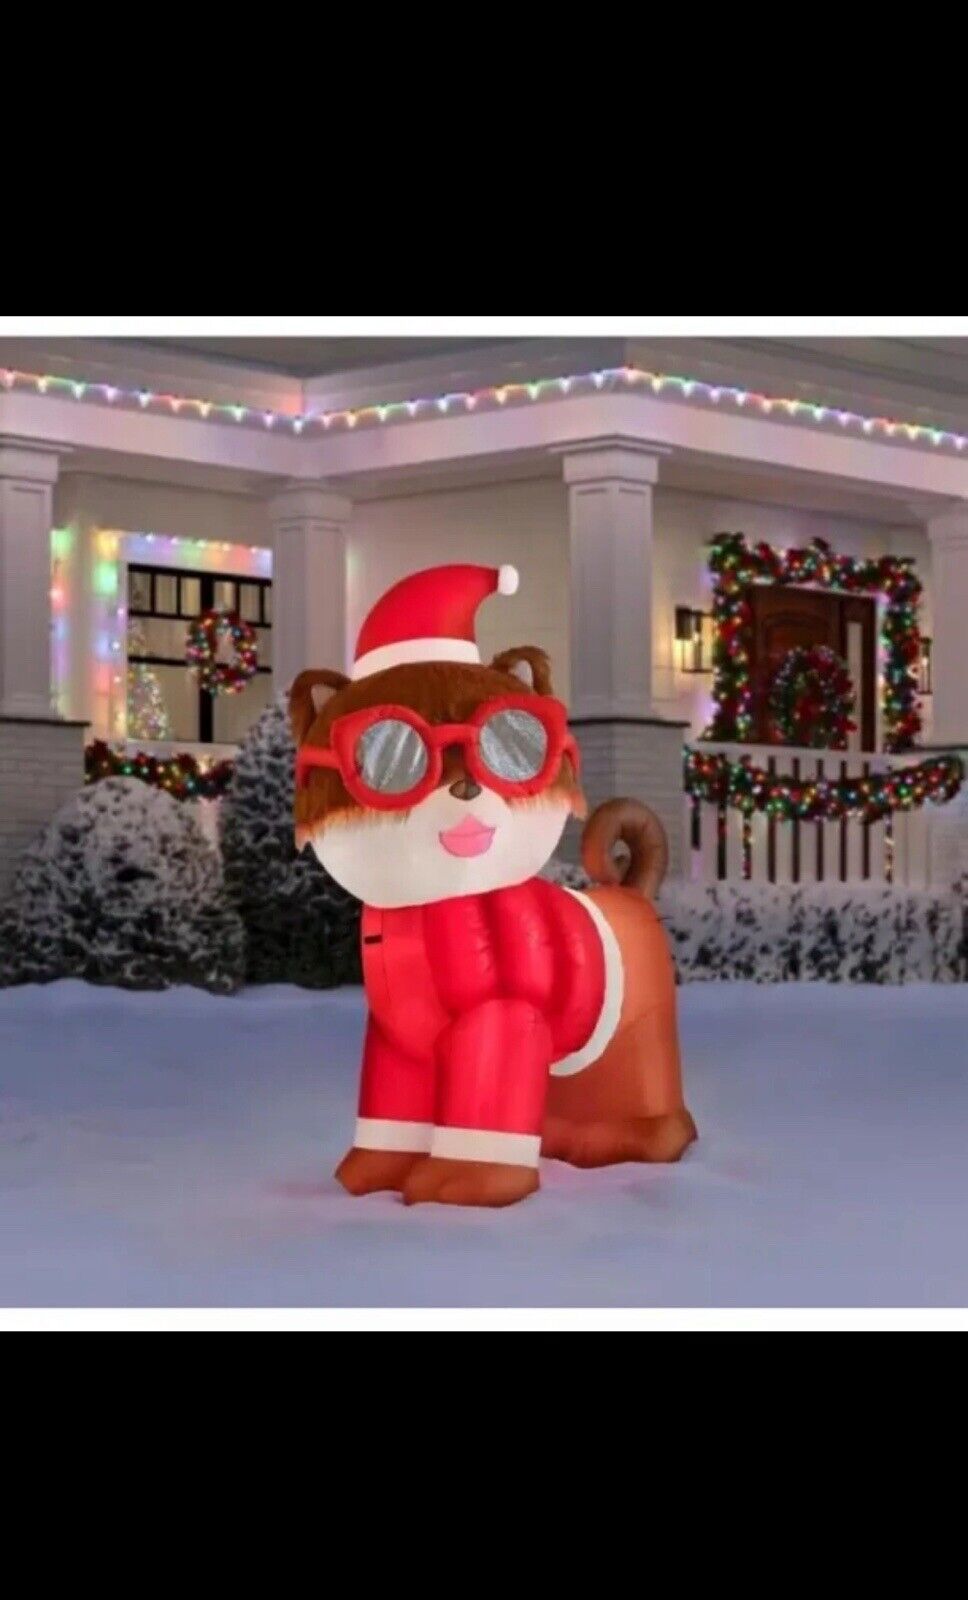 6 Ft. LED Fuzzy Plush Christmas Pomeranian Inflatable